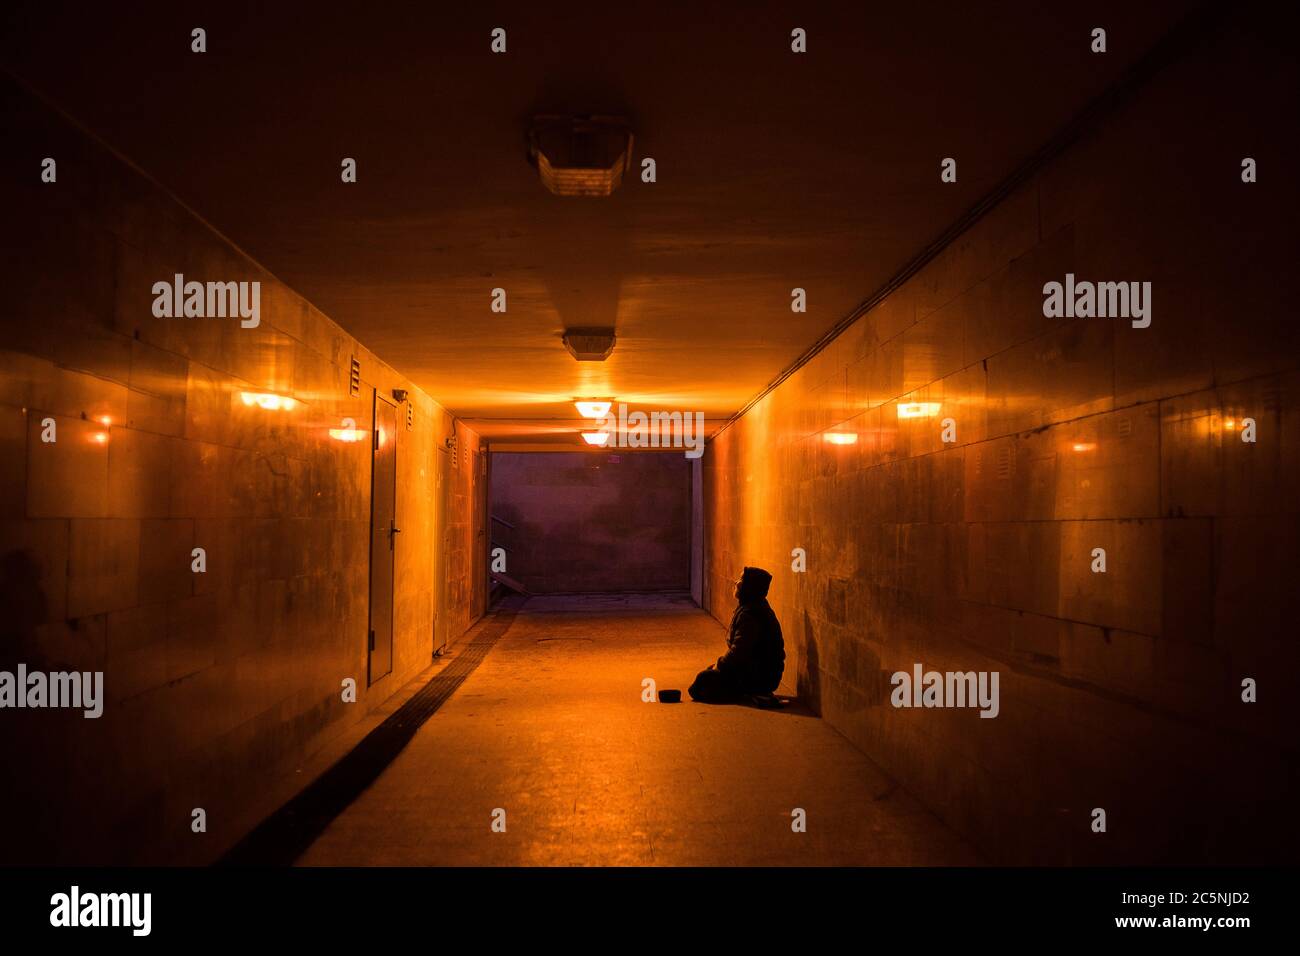 Obdachloser Bettler auf den Knien bittet in einer dunklen Unterführung um Almosen. Stockfoto